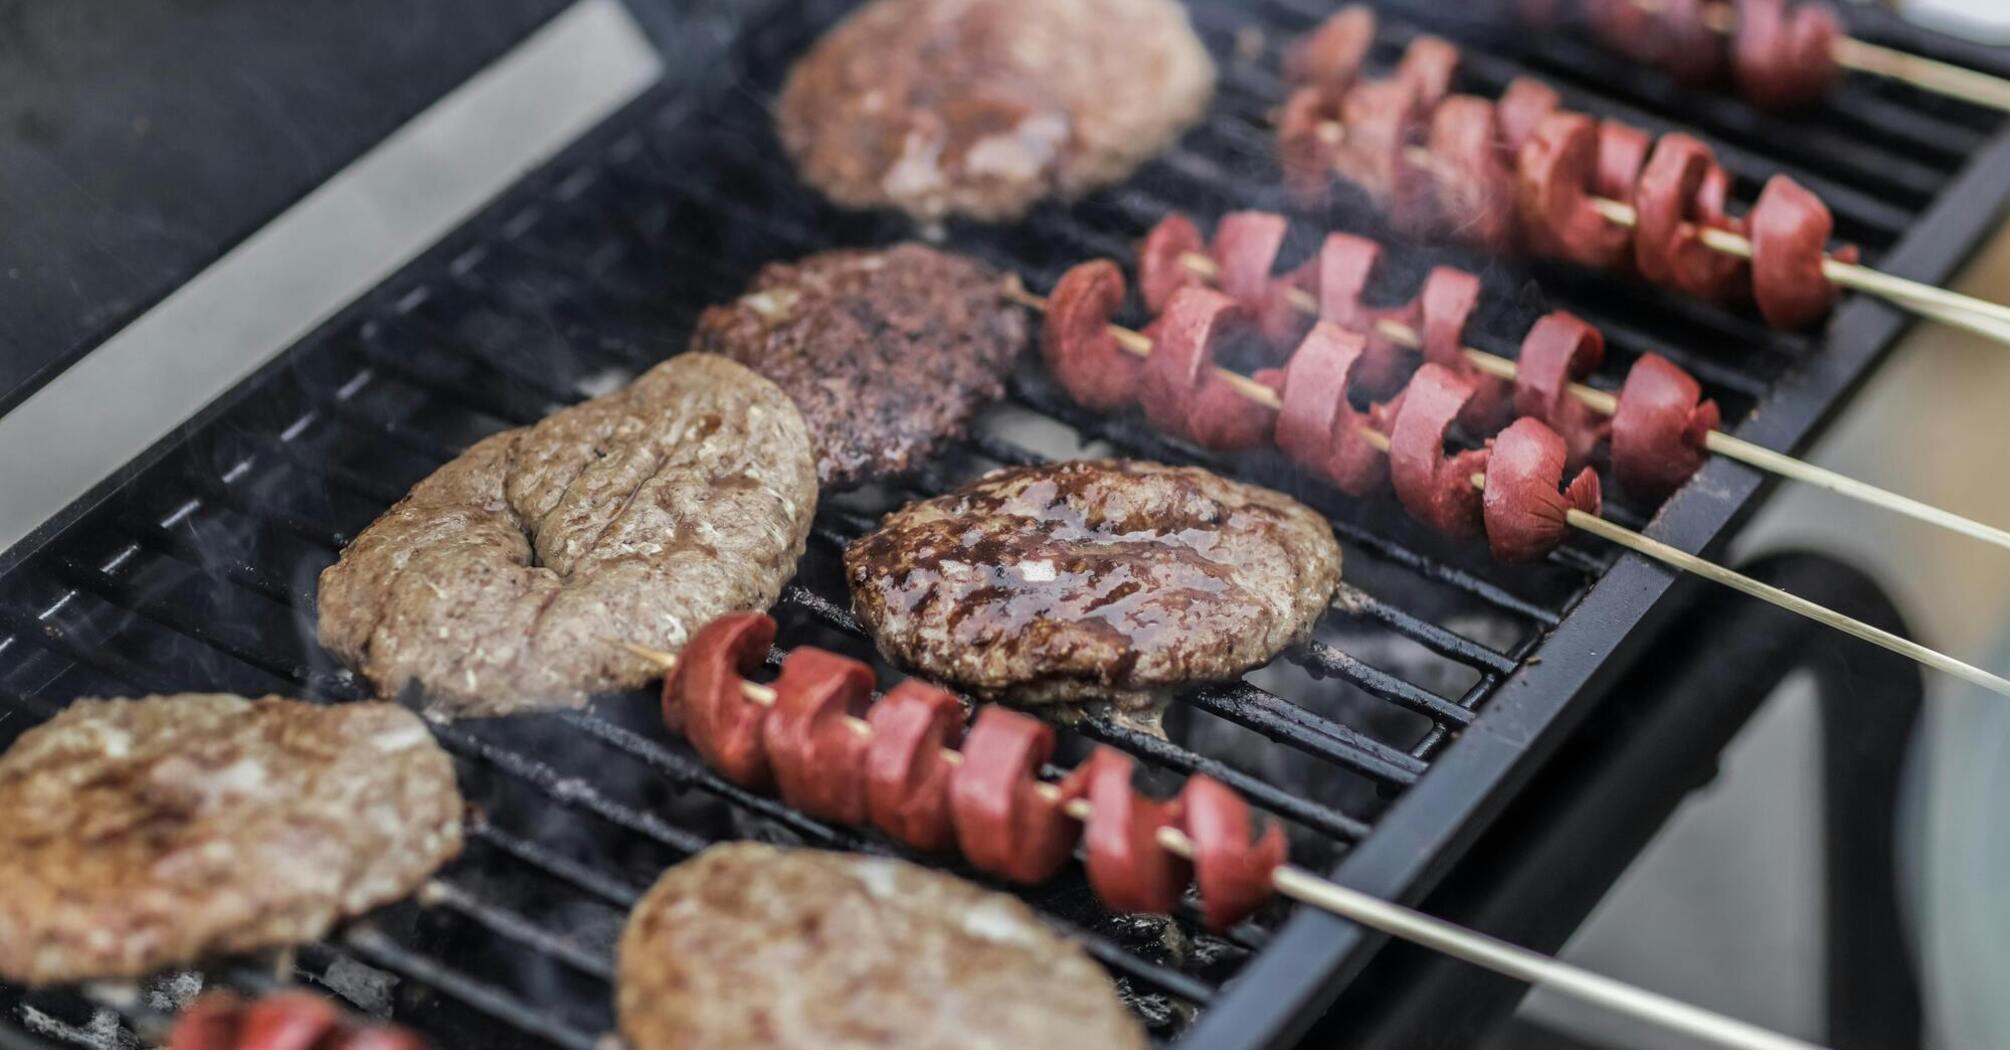 6 secrets of successful barbecue